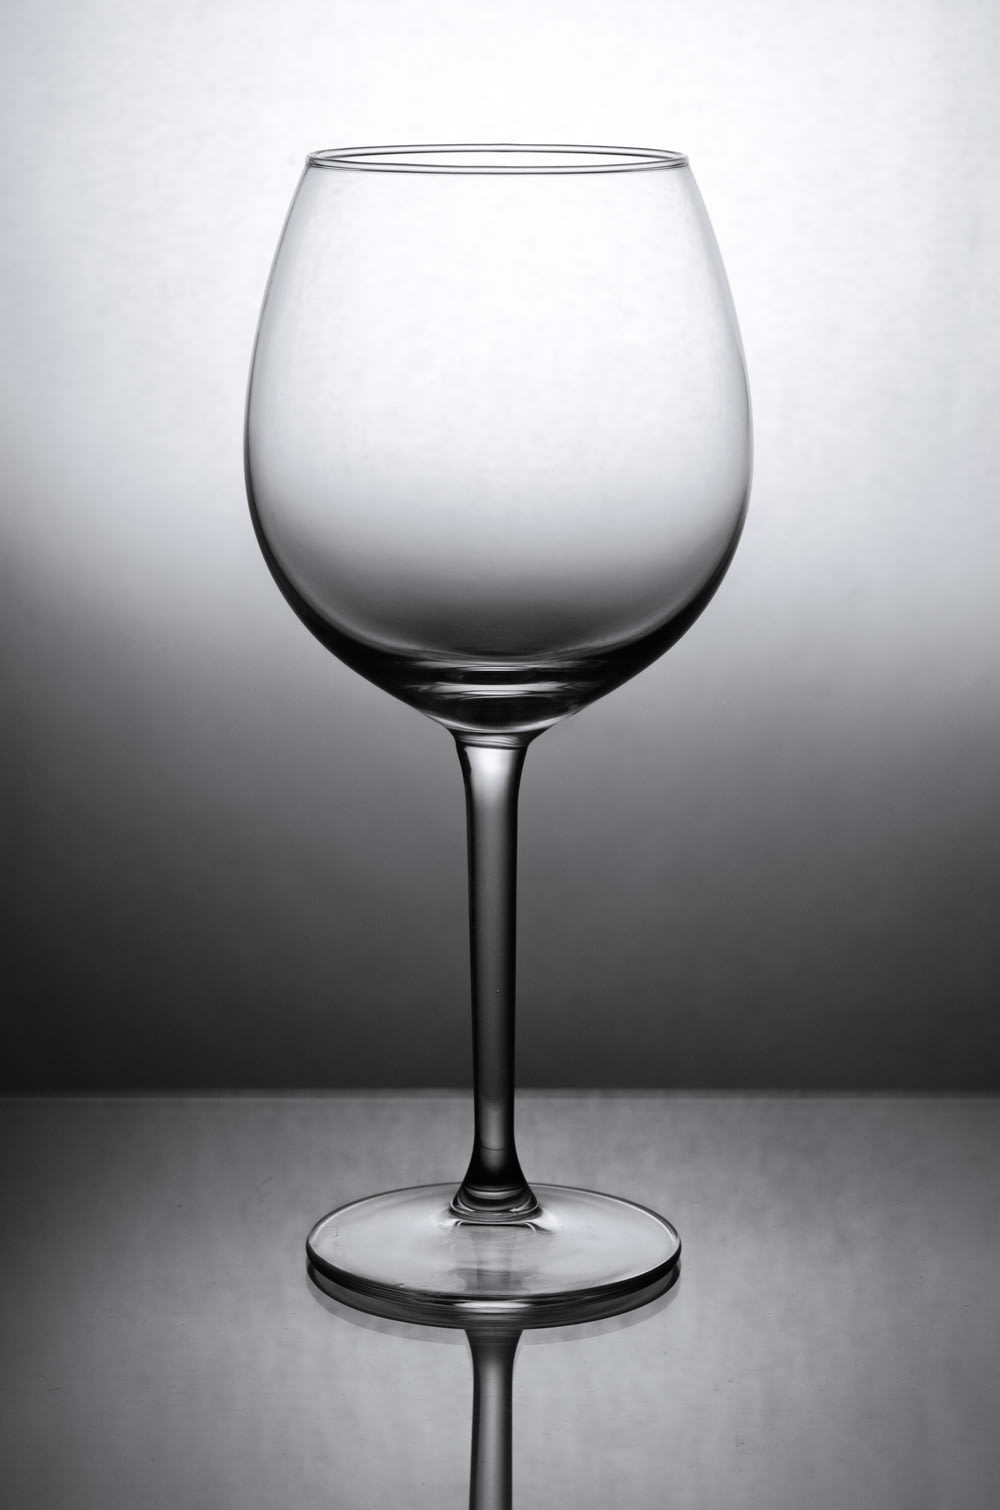 Photo en niveaux de gris d’un verre à vin